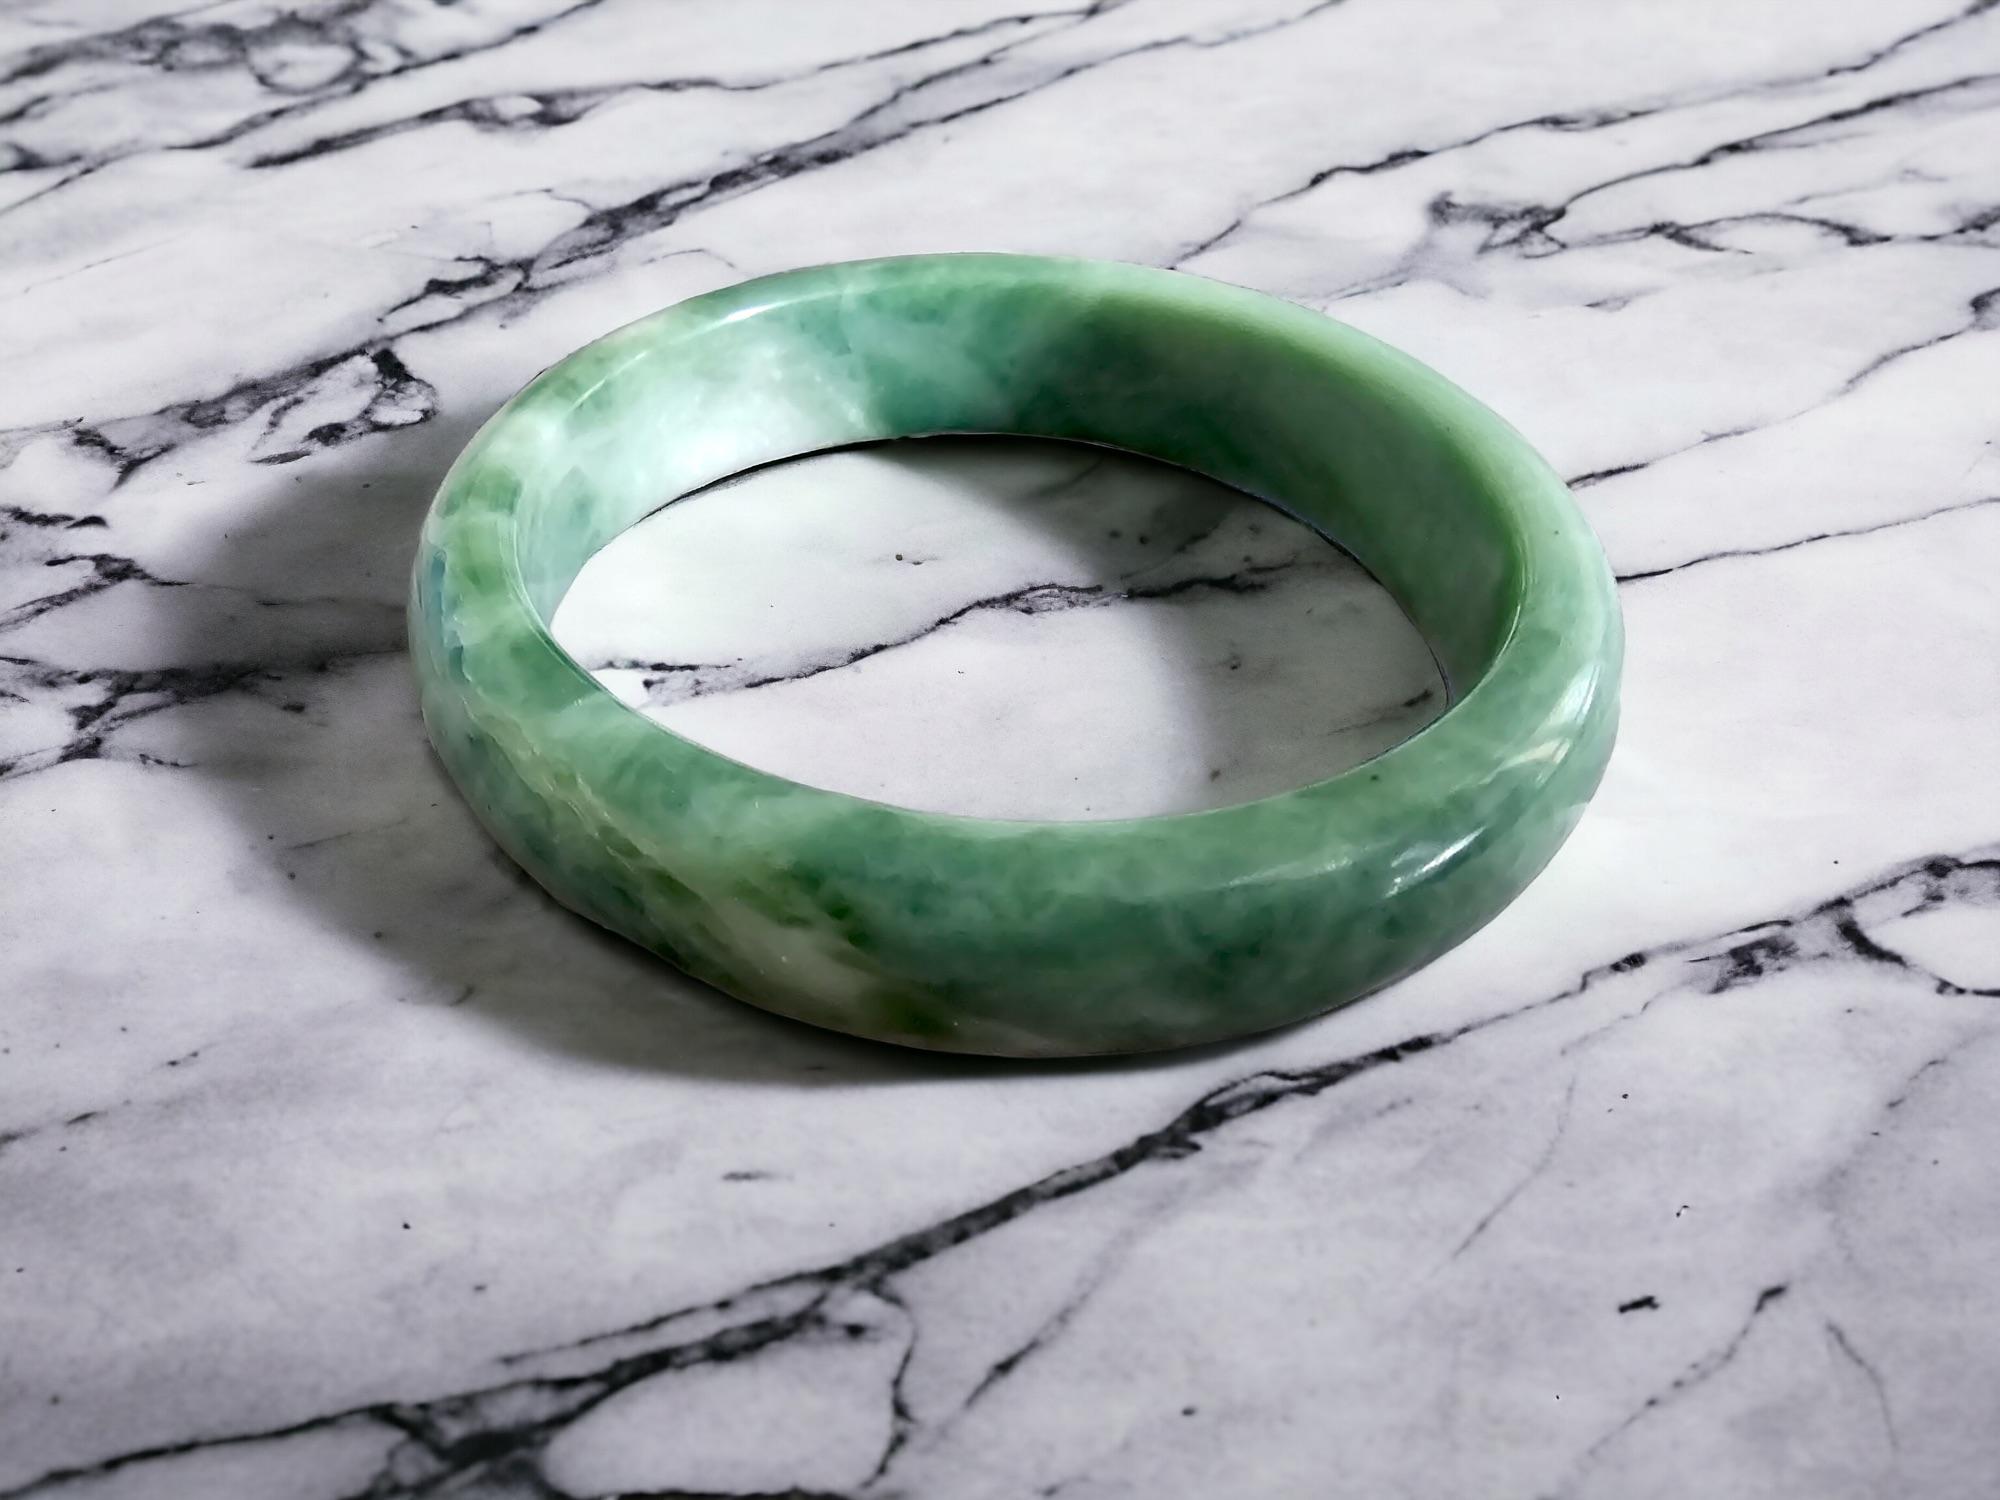 Burmesischer A-Jadeit Jade-Armreif; Grüner, grauer, weißer Jadeit 08808

Unsere 'Earth's' Bangle Bracelets sind allesamt Einzelstücke;

Dieses Stück ist berühmt für seine einzigartigen grünen, grauen und weißen Farbtöne mit fantastischer